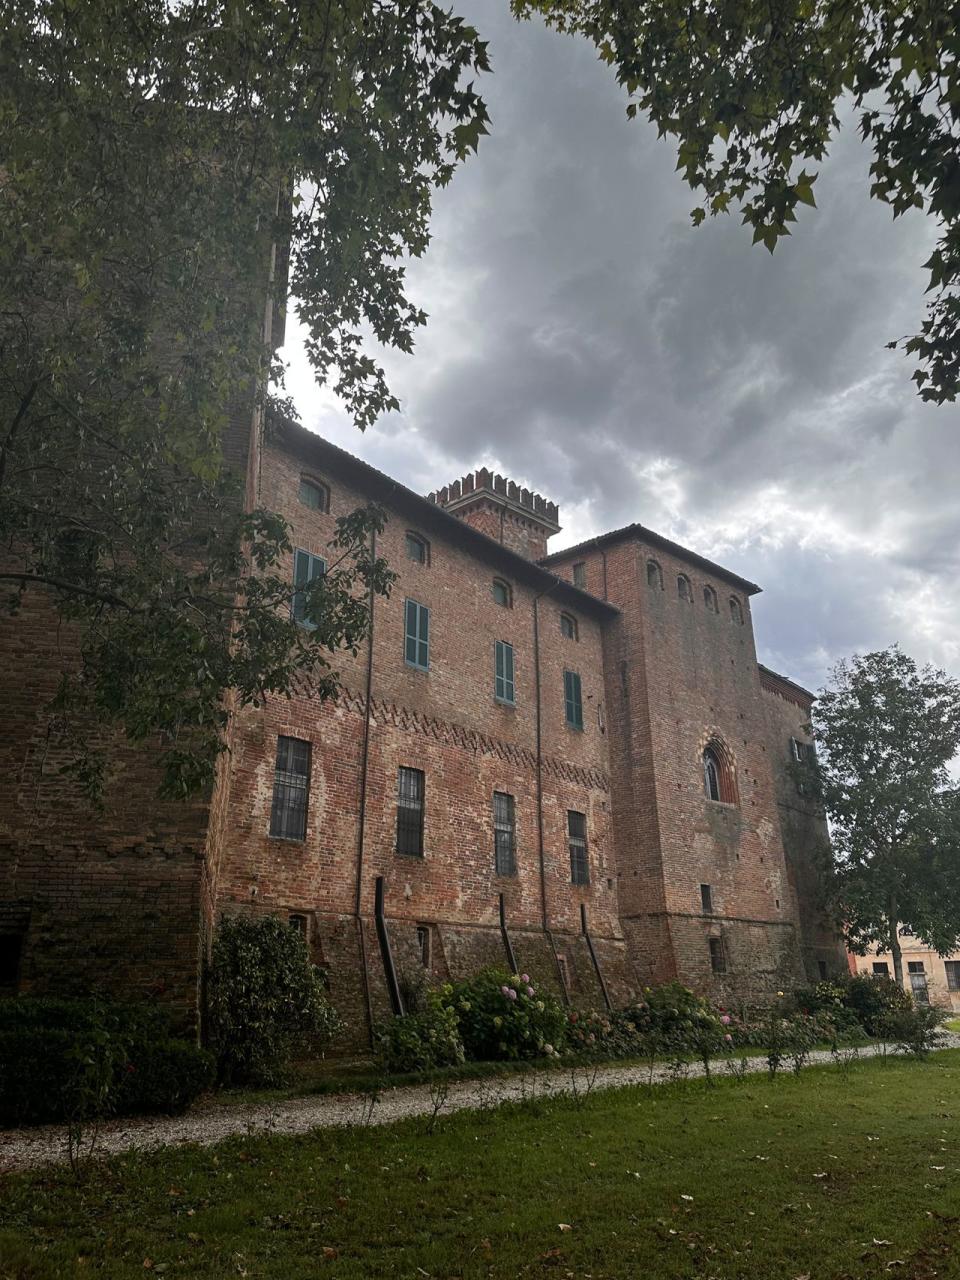 Algunas habitaciones del castillo de Sannazzaro están disponibles para alquiler vacacional. Crédito: Ludovica Uberta Sannazzaro Natta